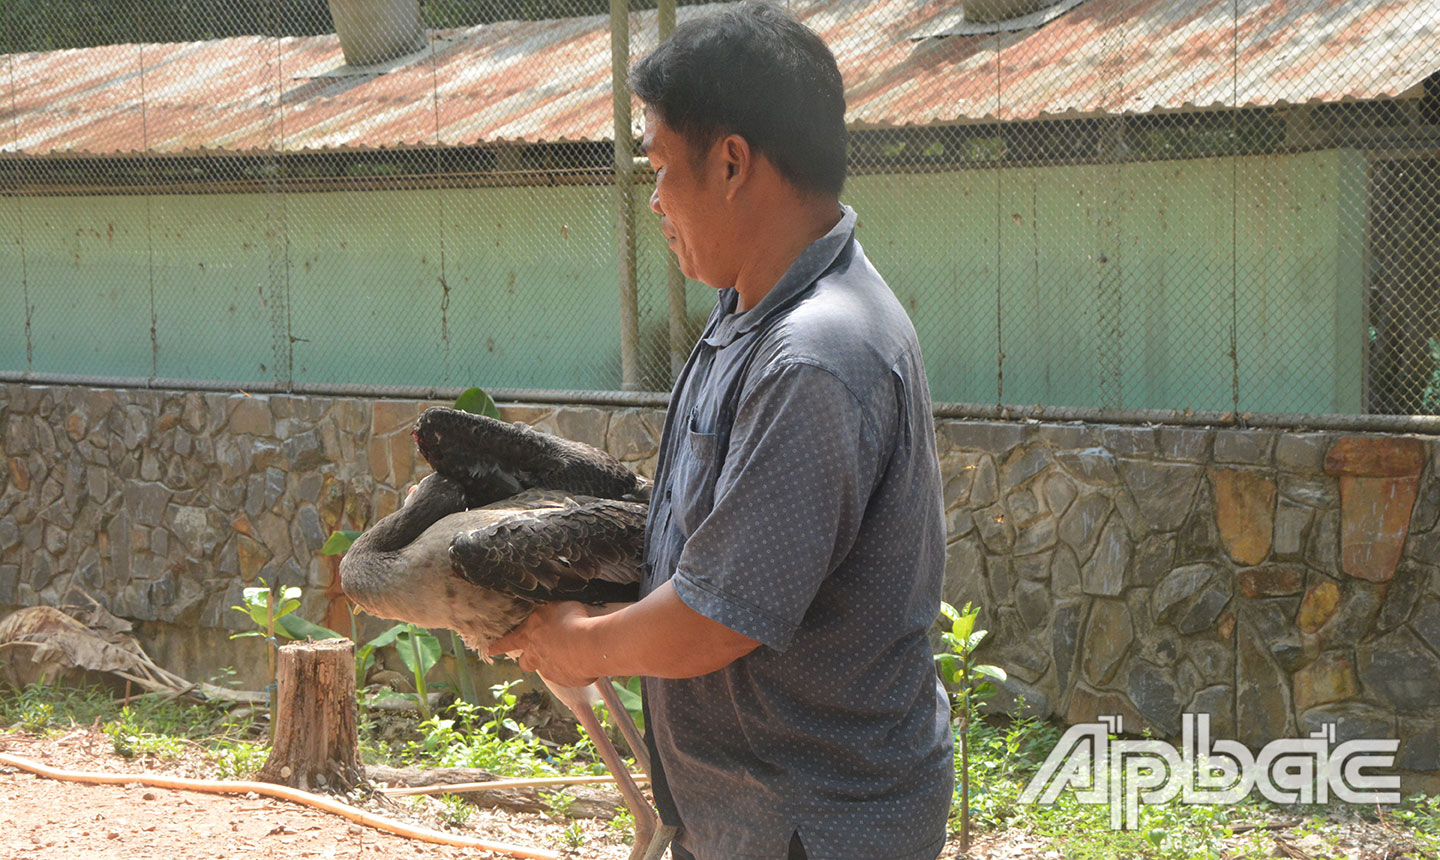 Loài chim Giang sen được kỹ sư Trần Văn Bạc nghiên cứu  nhân giống thành công trong điều kiện nuôi bán hoang dã.